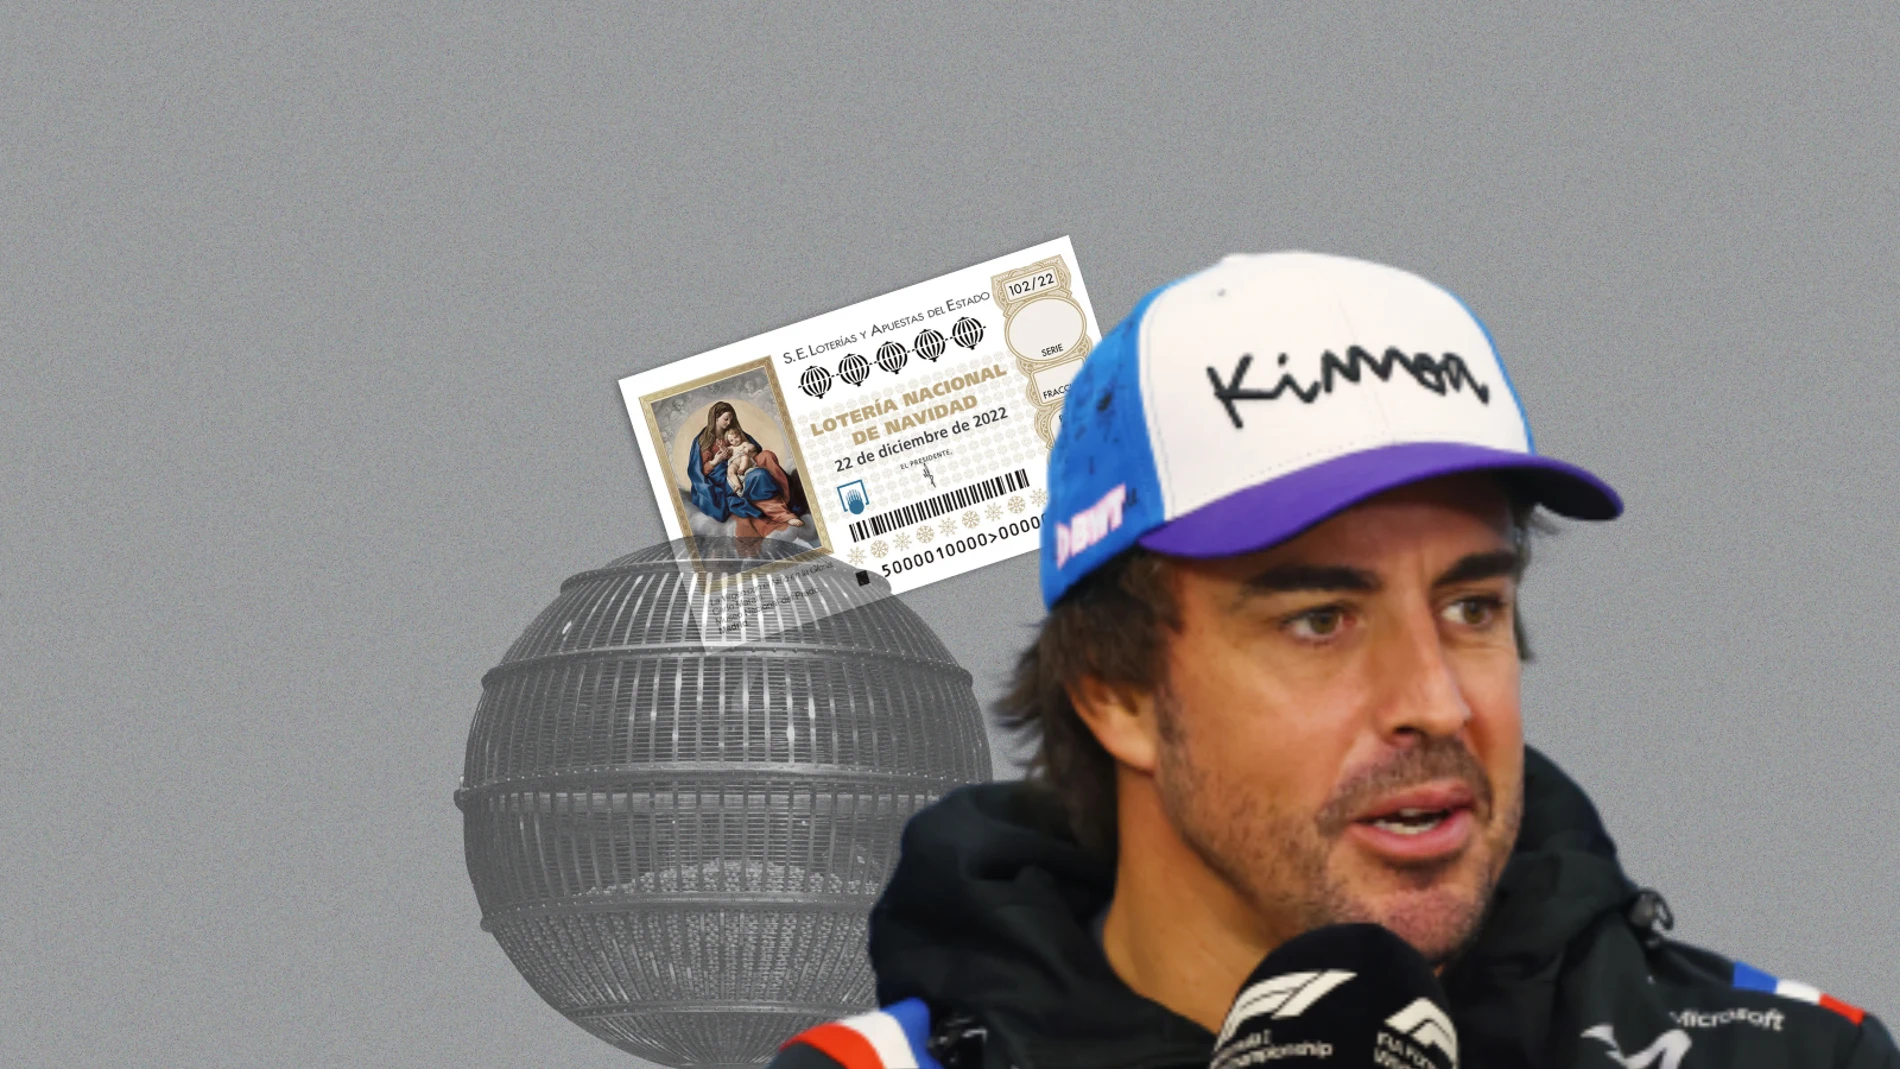 Fernando Alonso y la Lotería de Navidad: qué tiene que ver el asturiano con el sorteo navideño